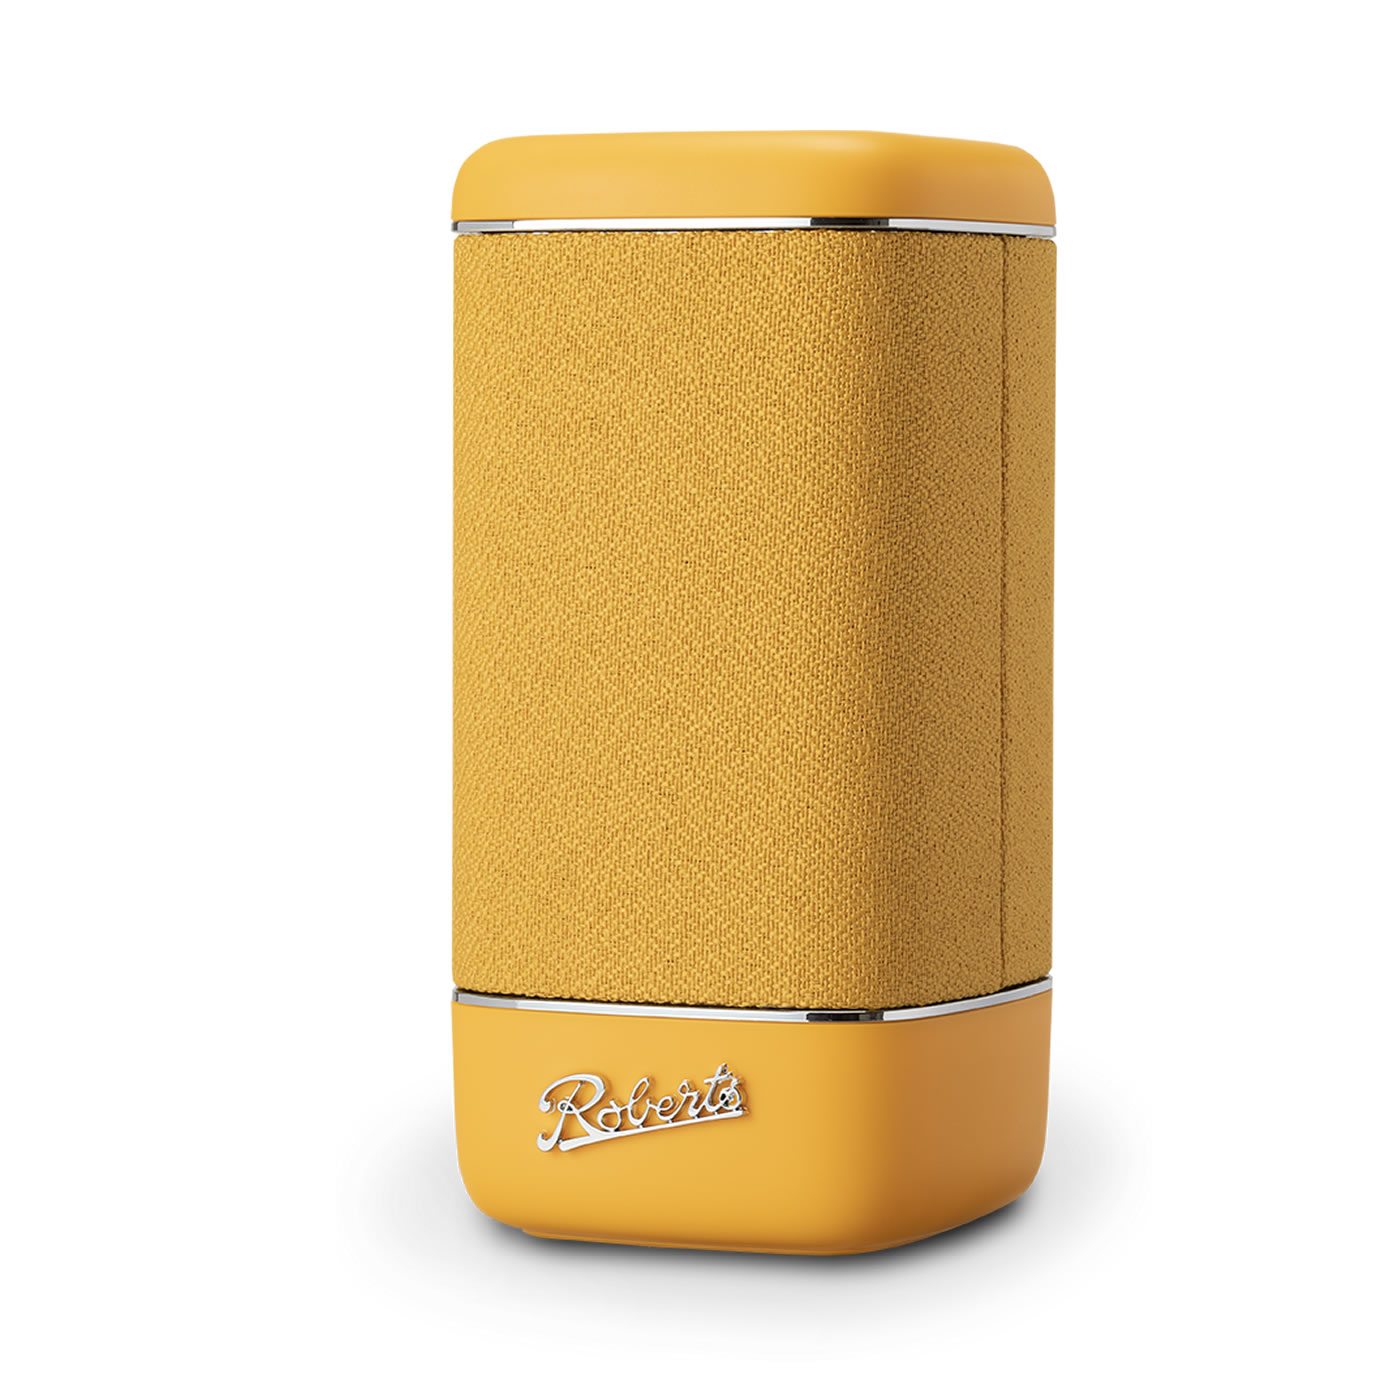 Roberts Bluetooth Speaker 12-hour Playback Sunshine Yellow